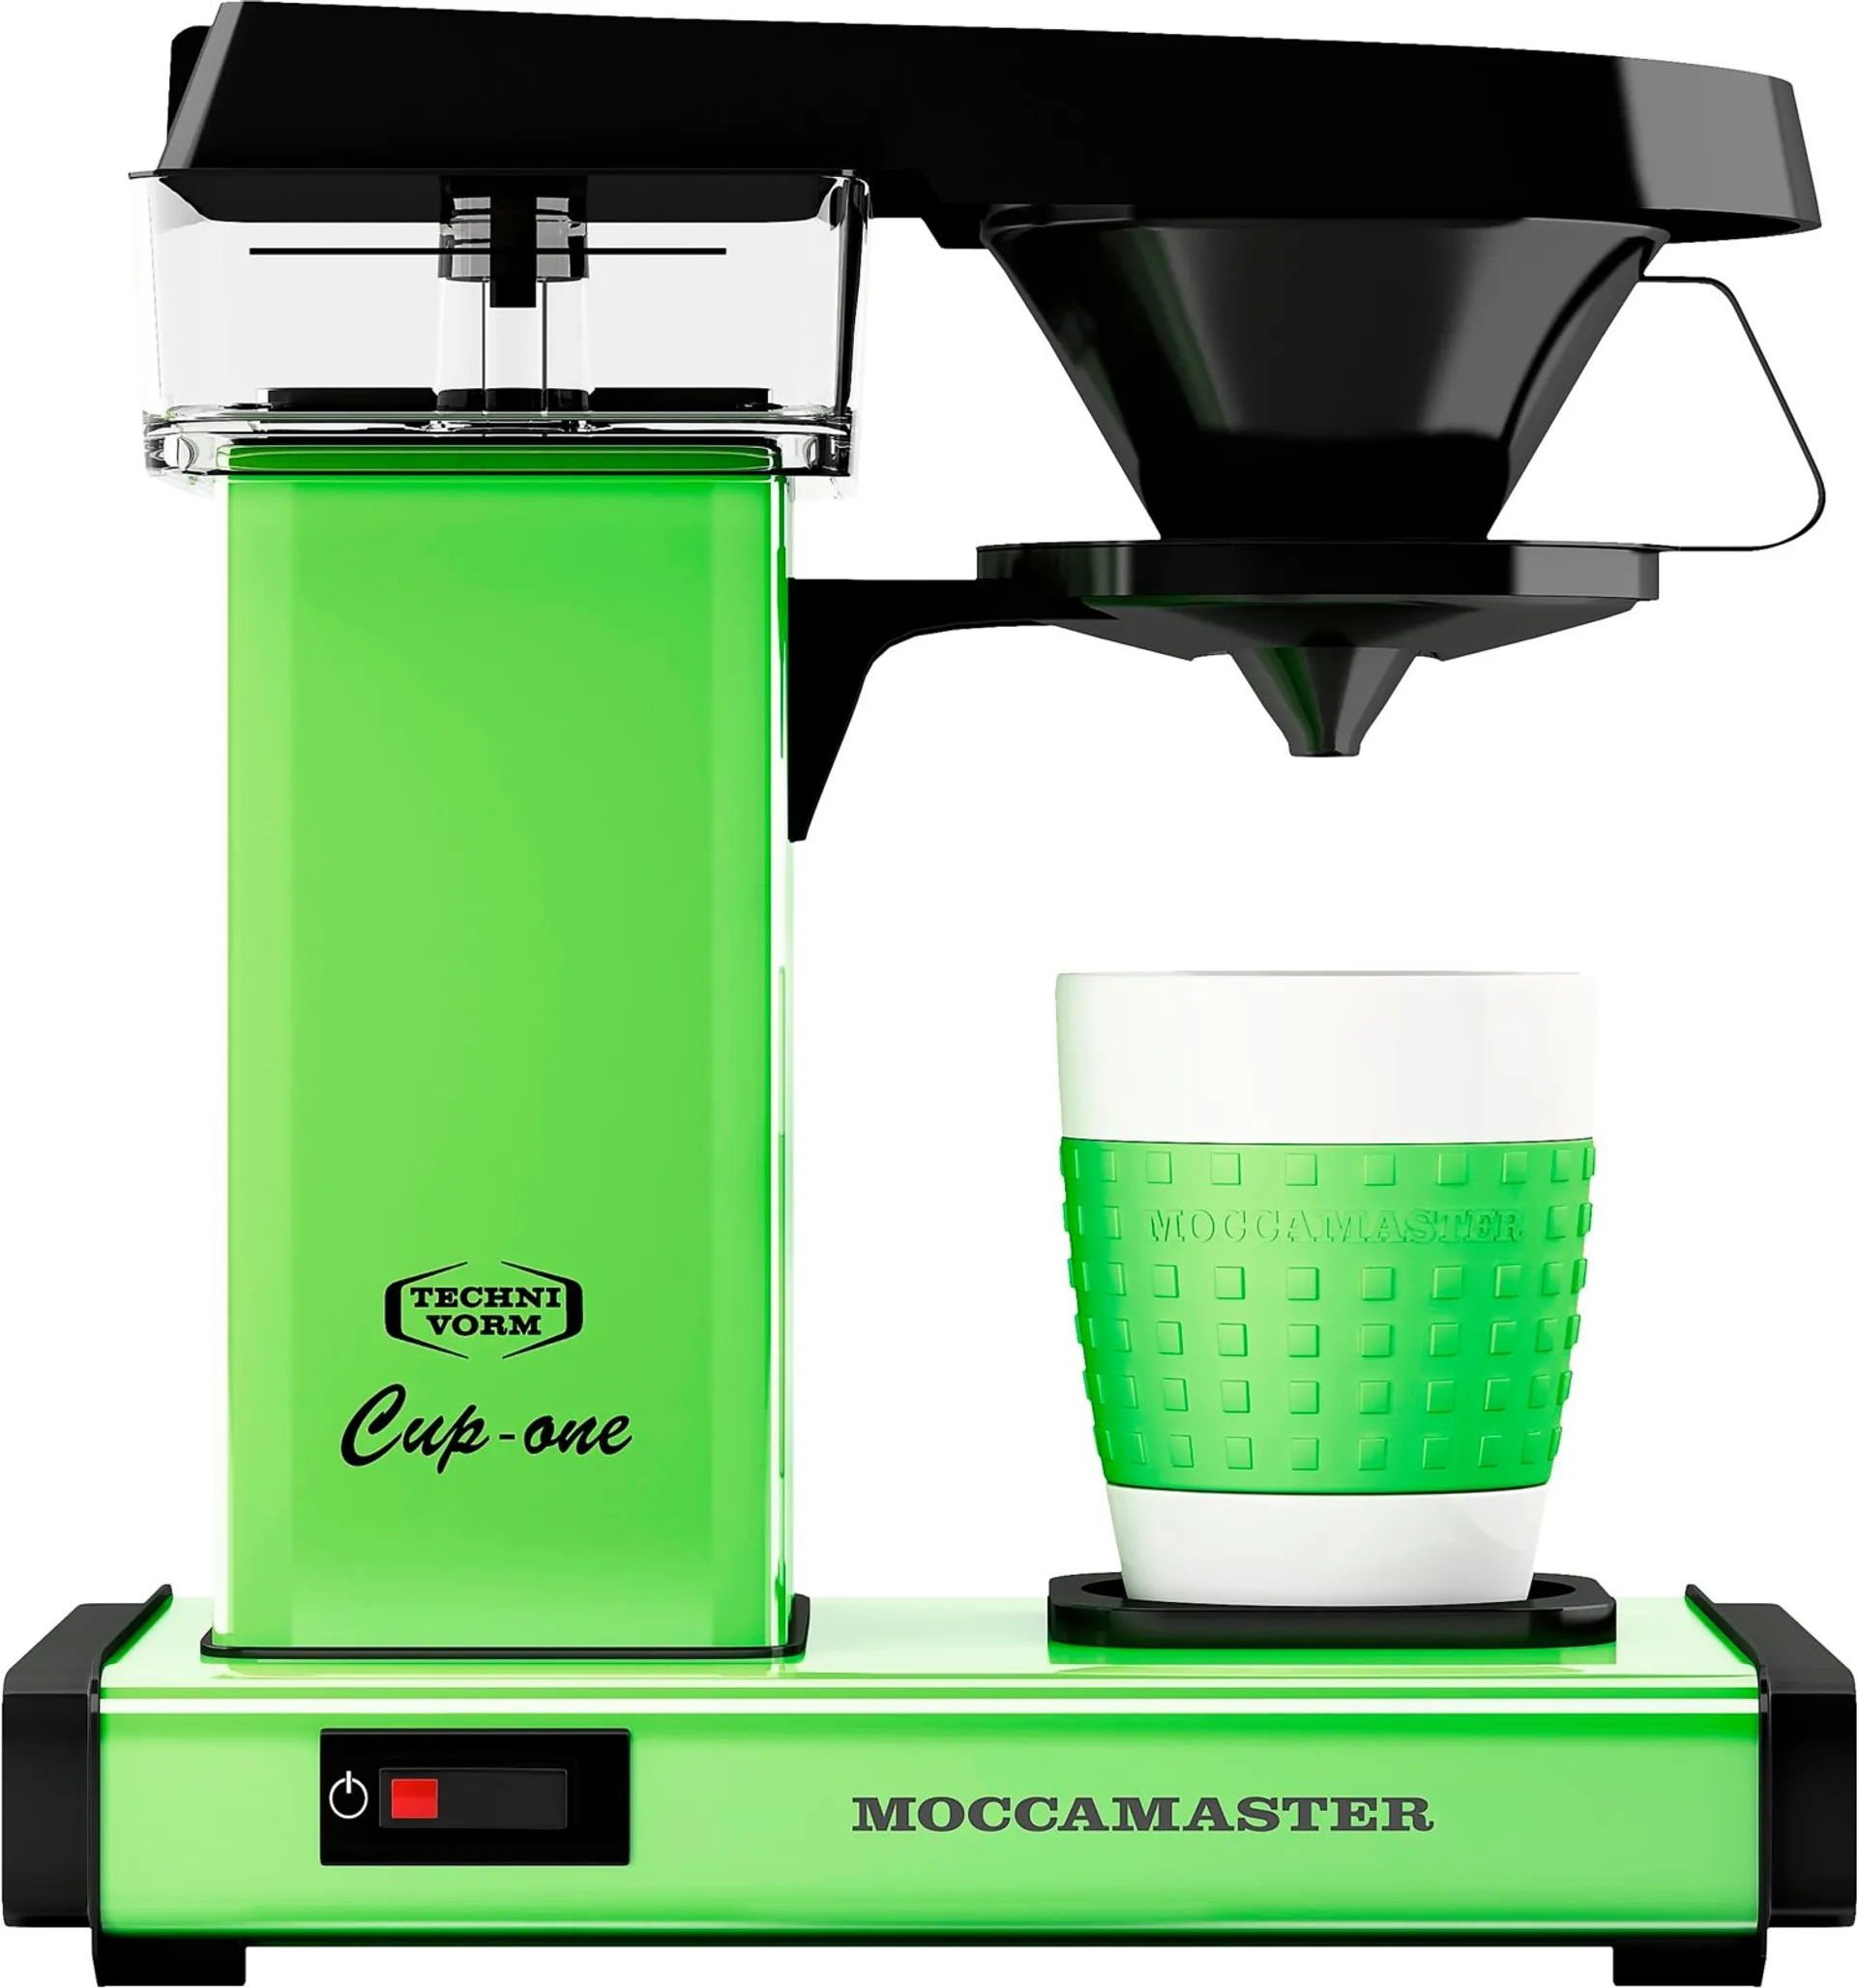 Moccamaster Cup-one yhden kupin kahvinkeitin vihreä